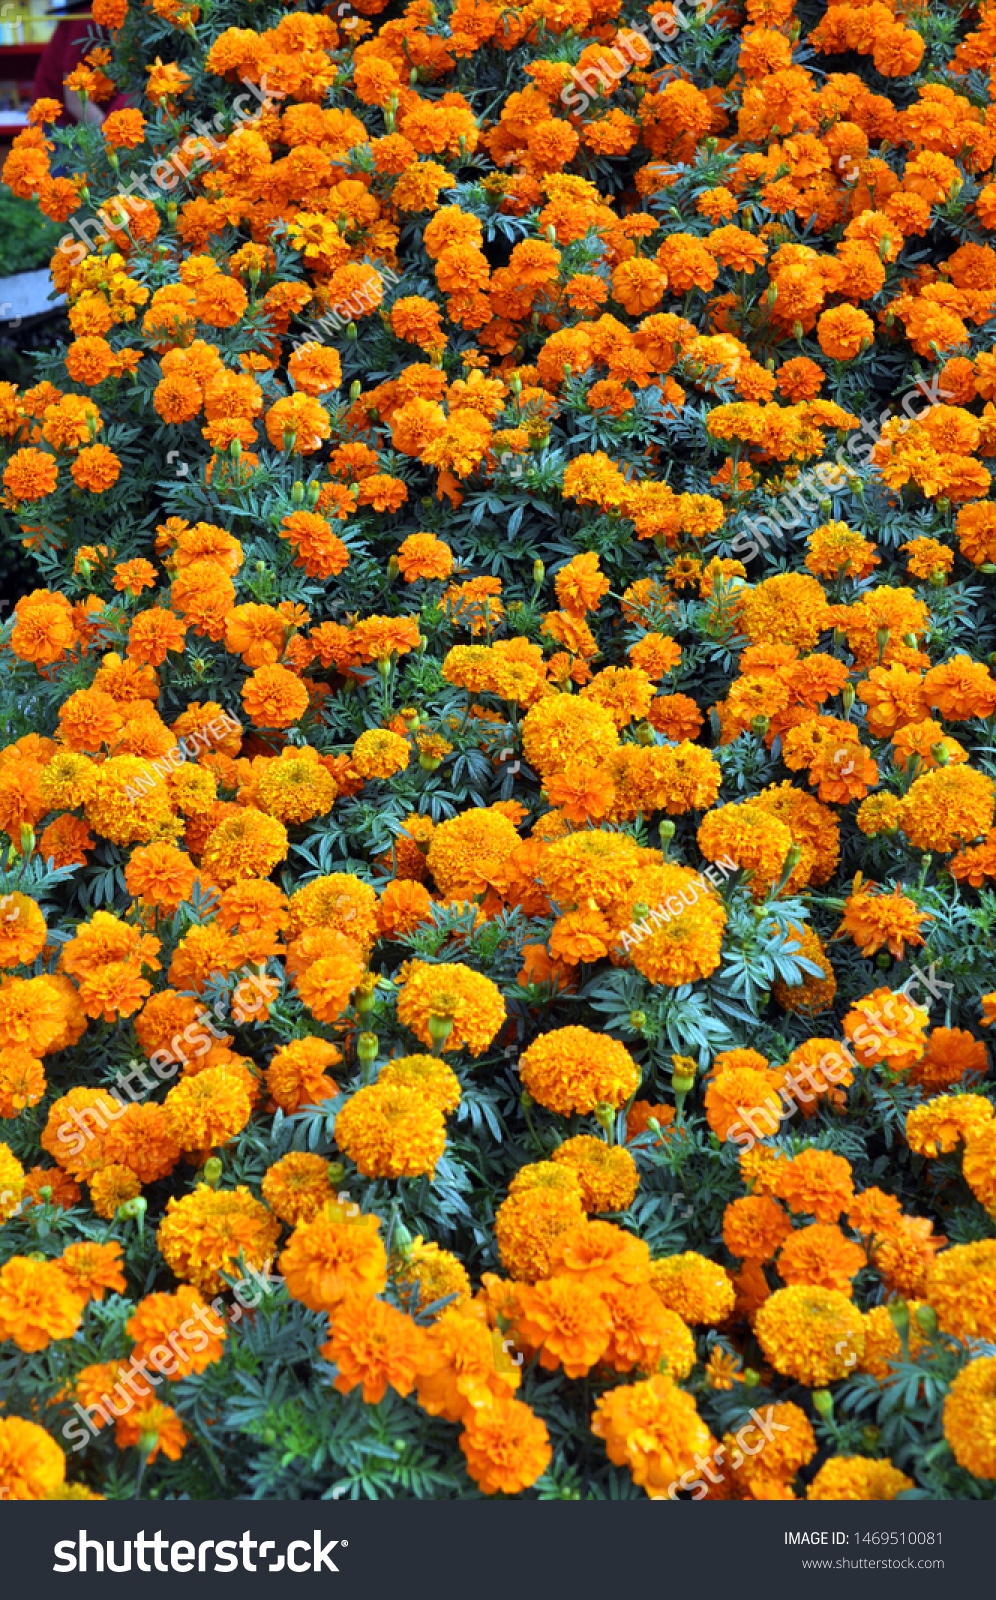 Marigold flowers blooming in garden blooming in garden #1469510081